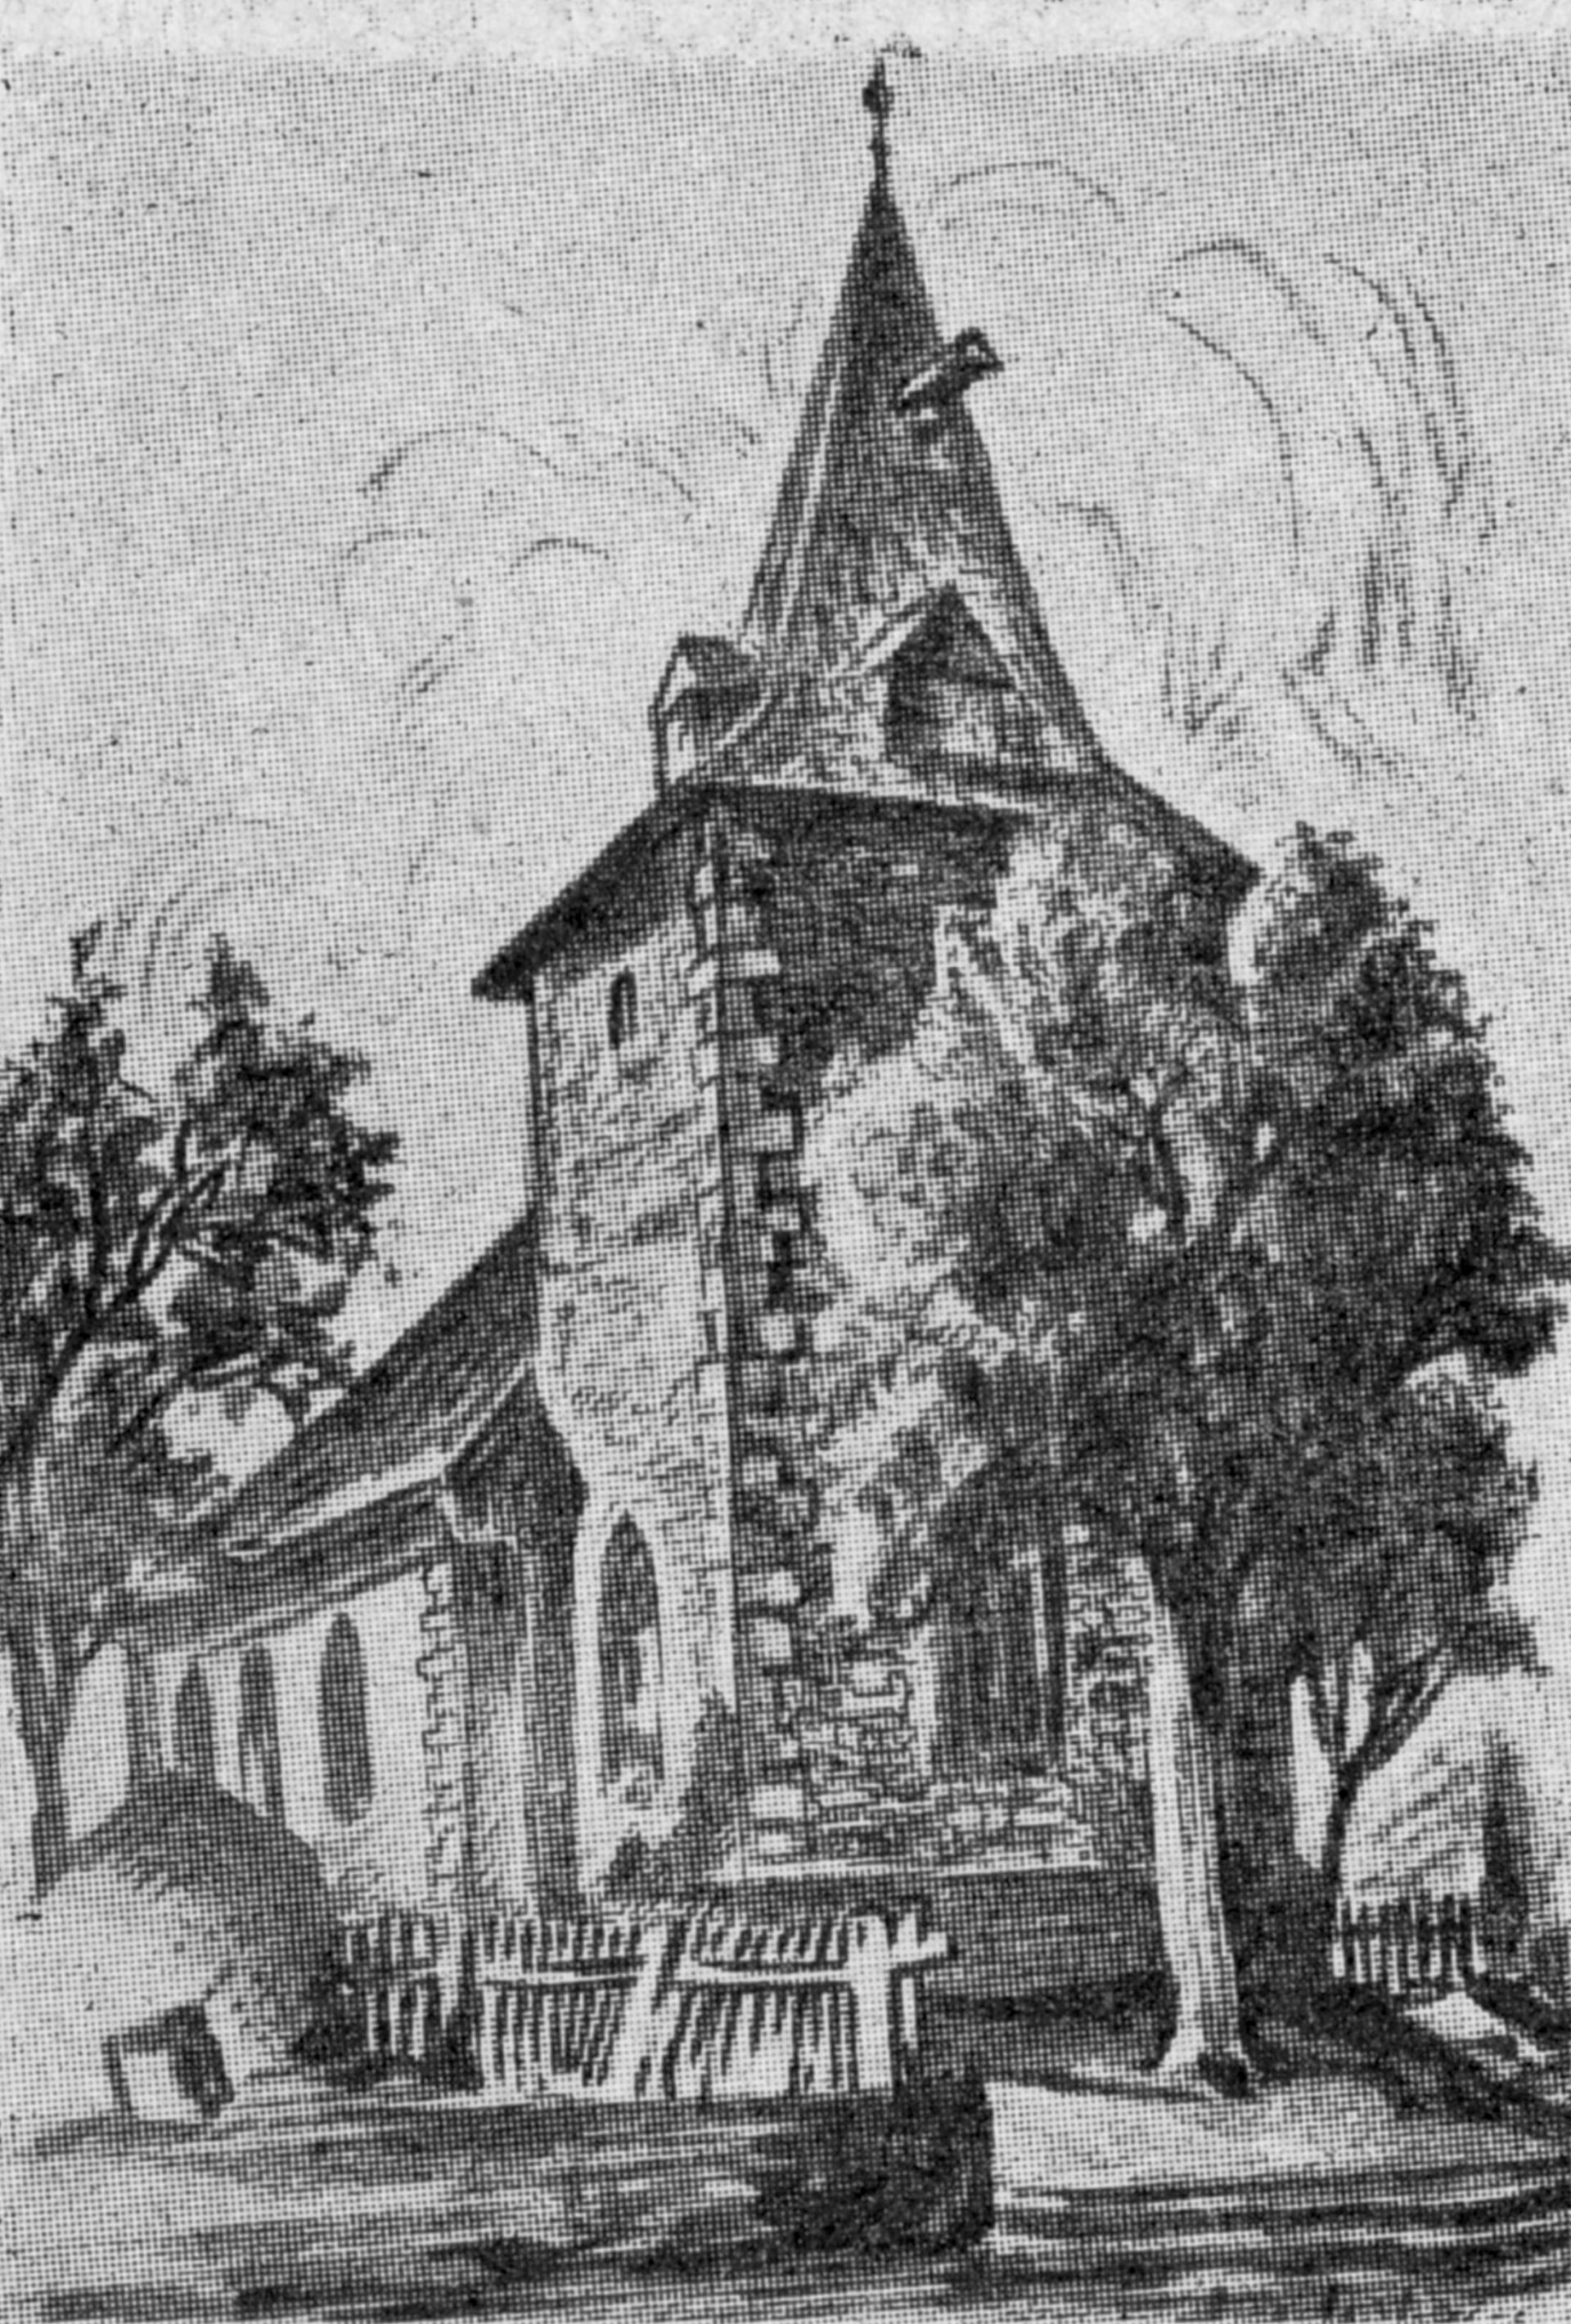 Die Kapelle in Lüerdissen bei Eschershausen